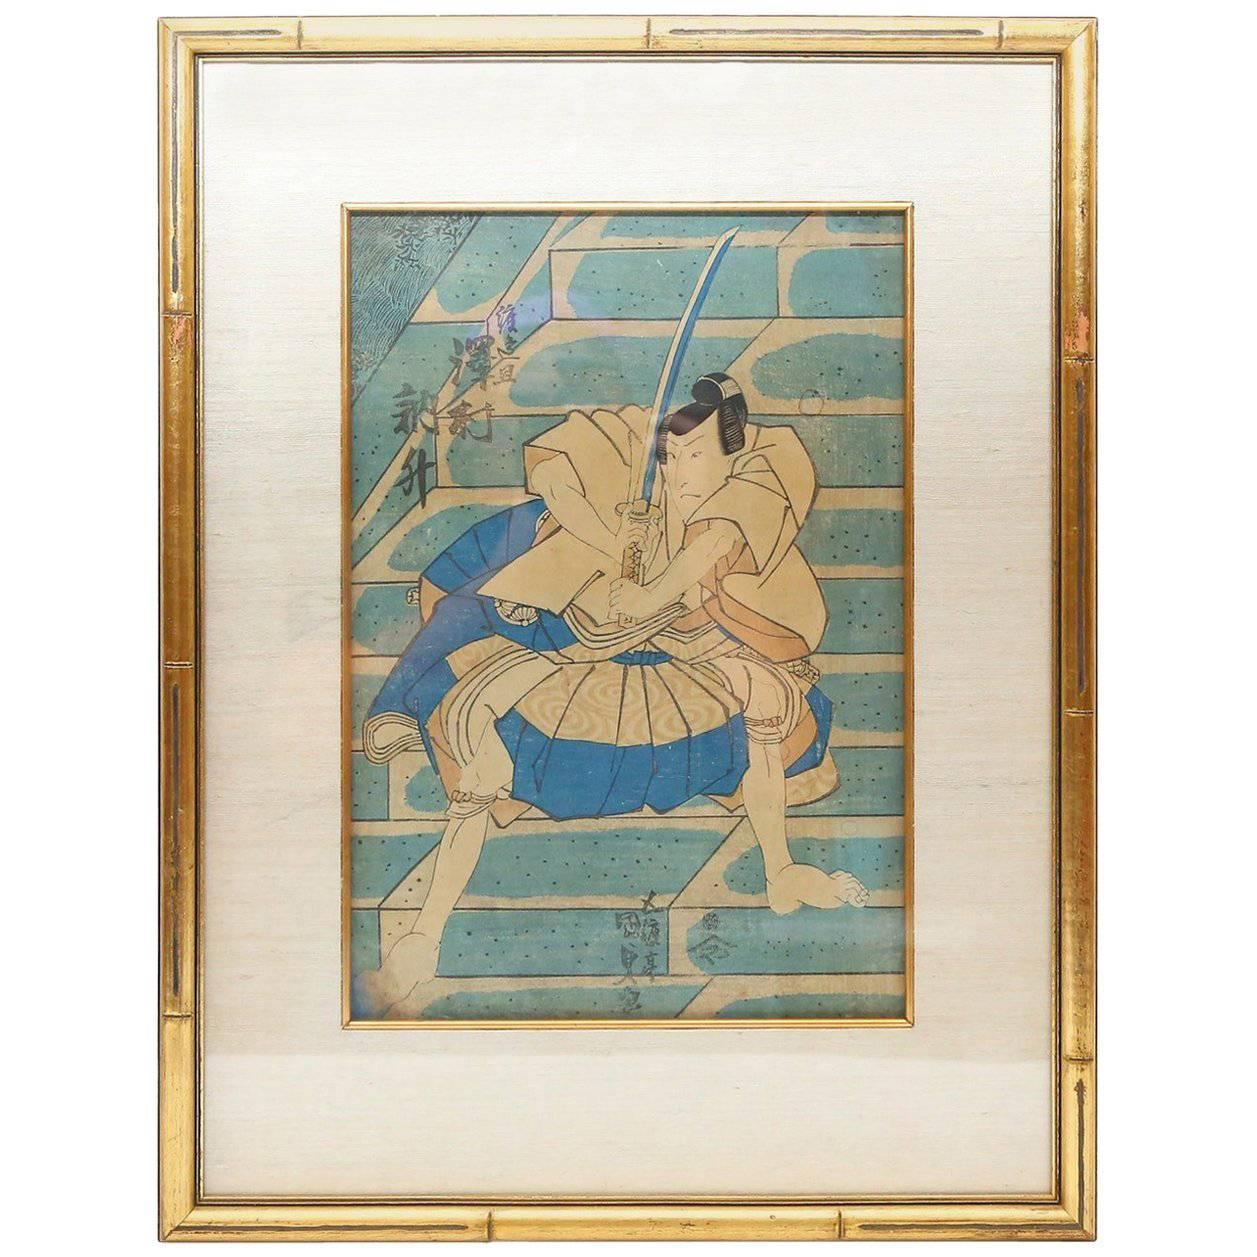 Impression eines Holzschnitts von Utagawa Kunisada aus dem 19. Jahrhundert